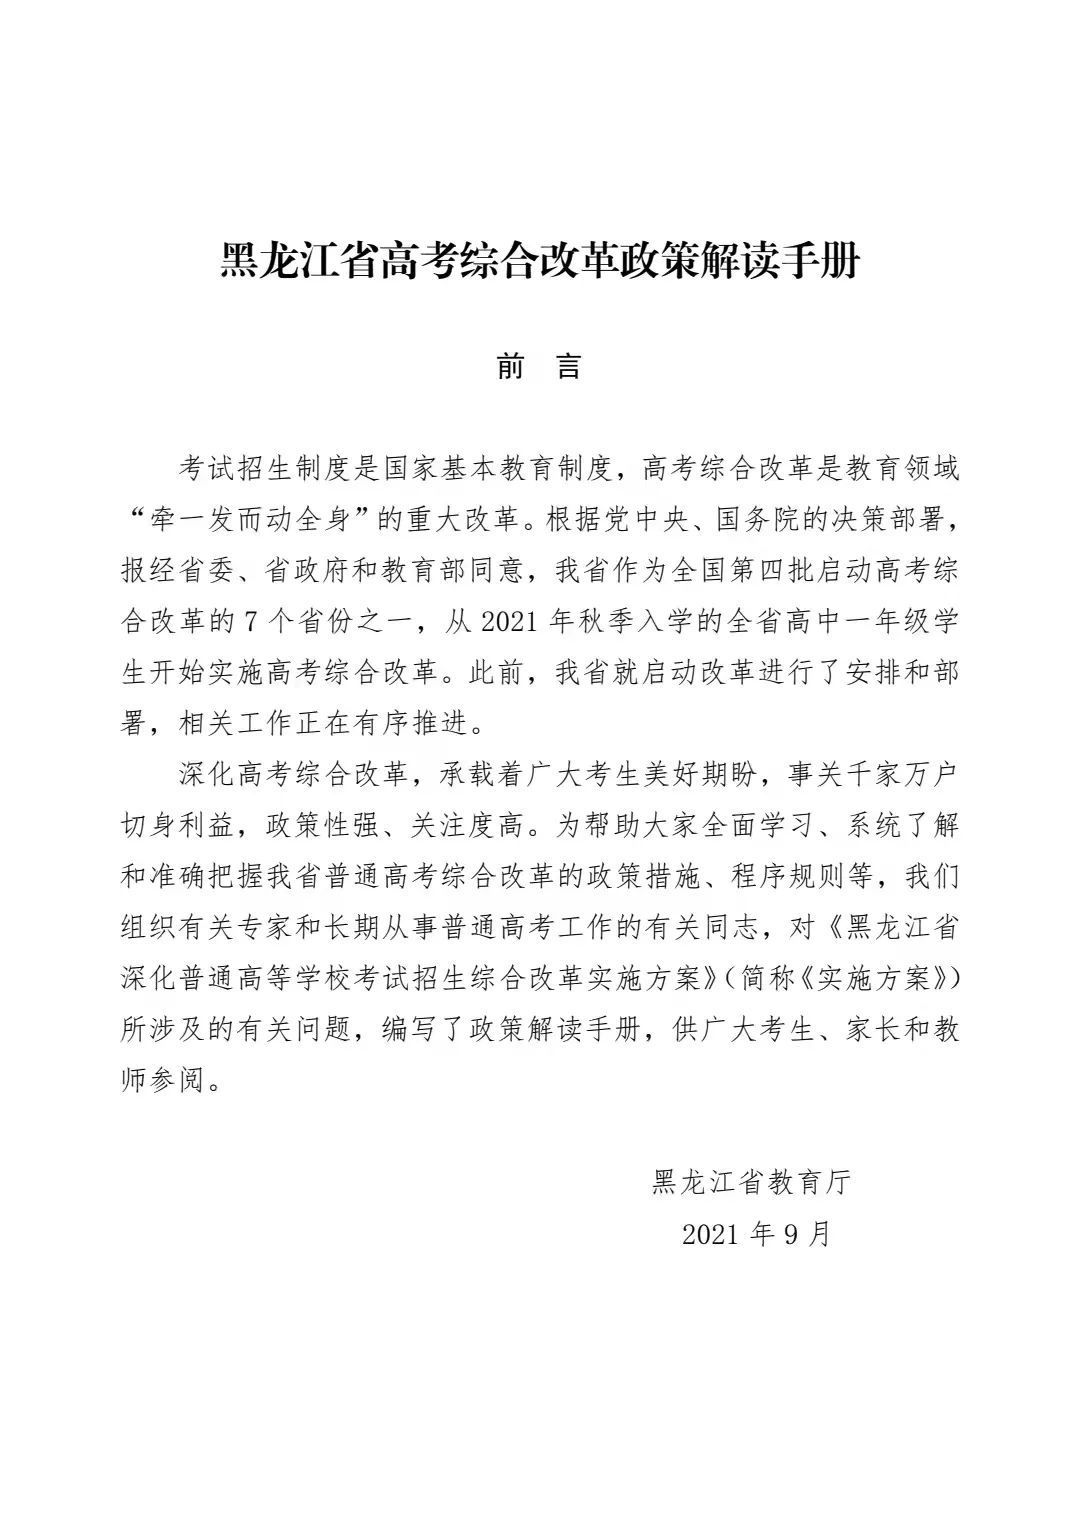 50问答让您了解黑龙江省高考综合改革